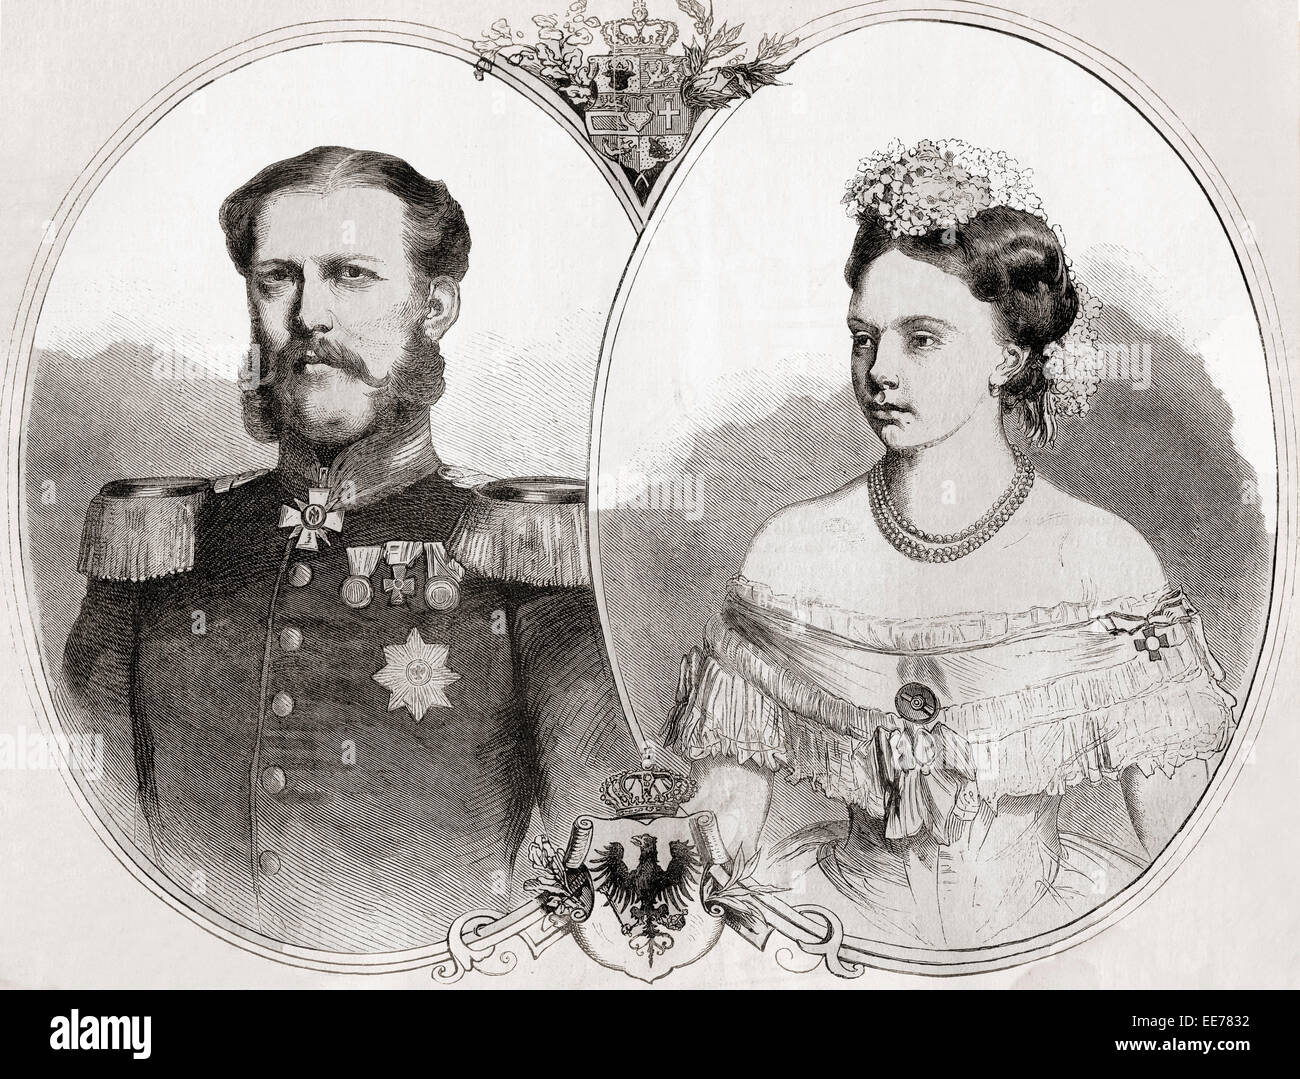 Duke William oder Willem von Mecklenburg-Schwerin, 1827-1879, und seine Frau Prinzessin Friederike Wilhelmina Louise Elisabeth Alexandrine von Preußen, 1842-1906. Stockfoto